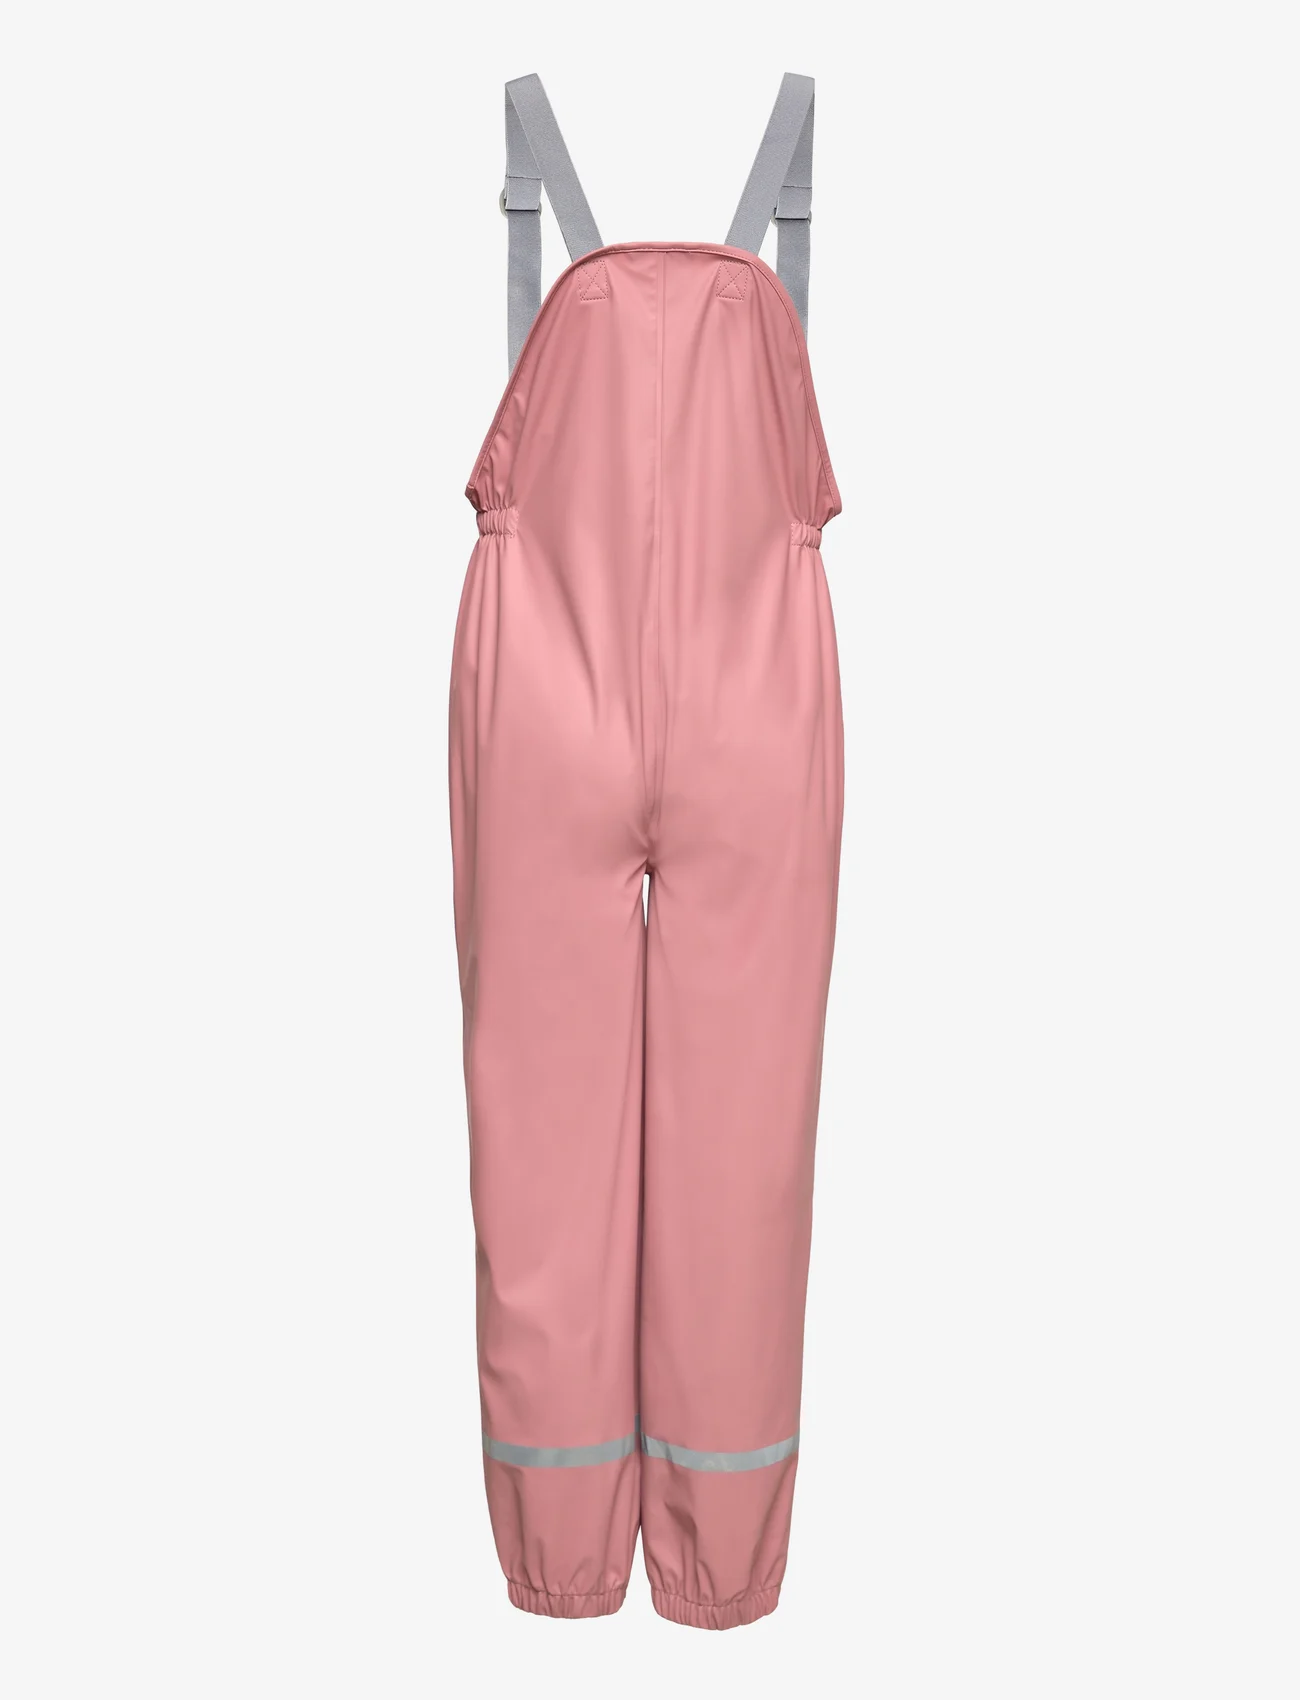 Color Kids - Pants PU - W. Suspender - spodnie przeciwdeszczowe - ash rose - 1